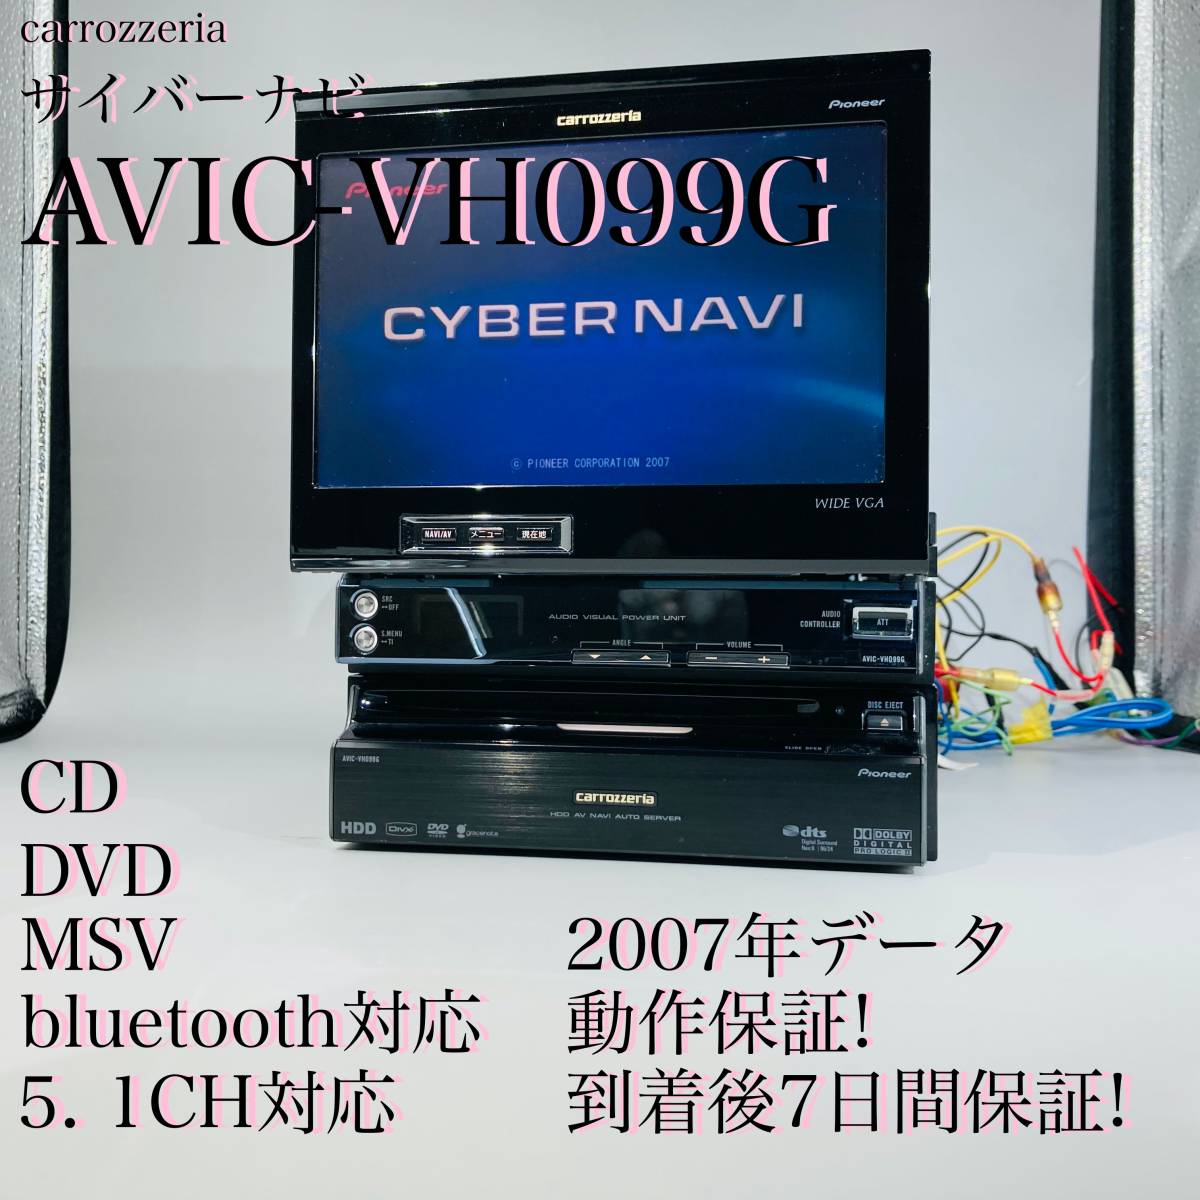 ヤフオク! -「avic-vh099g」の落札相場・落札価格